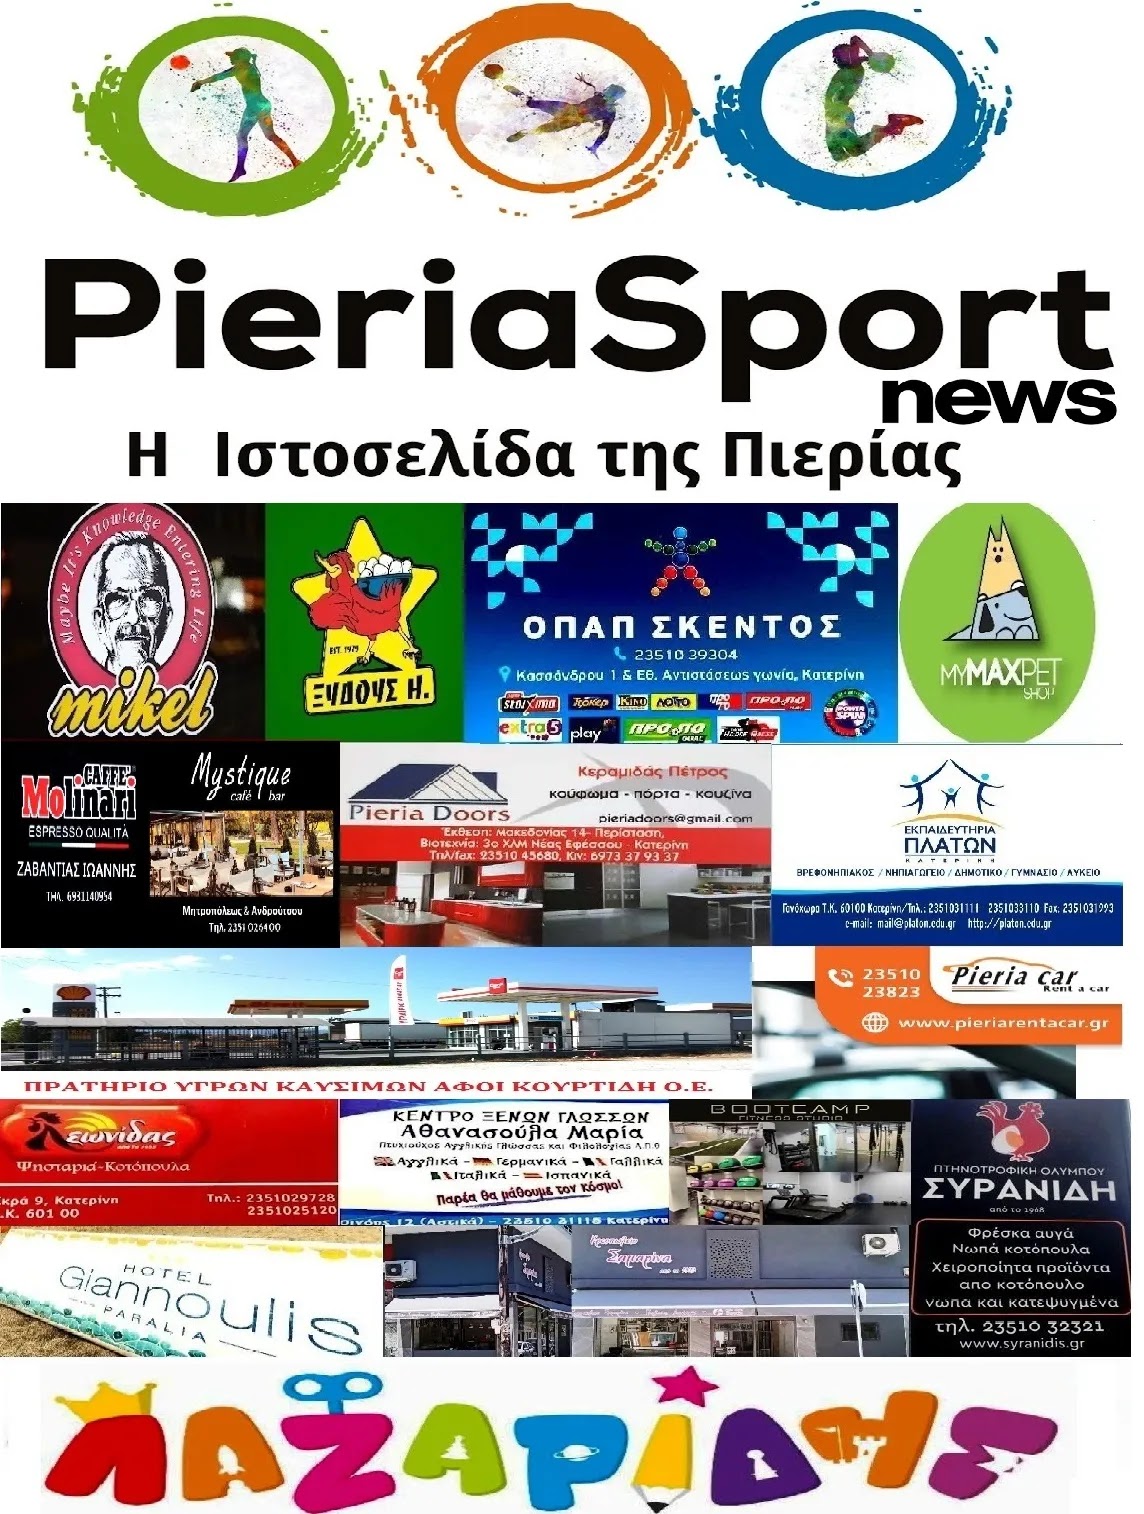 Pieriasport-news.gr